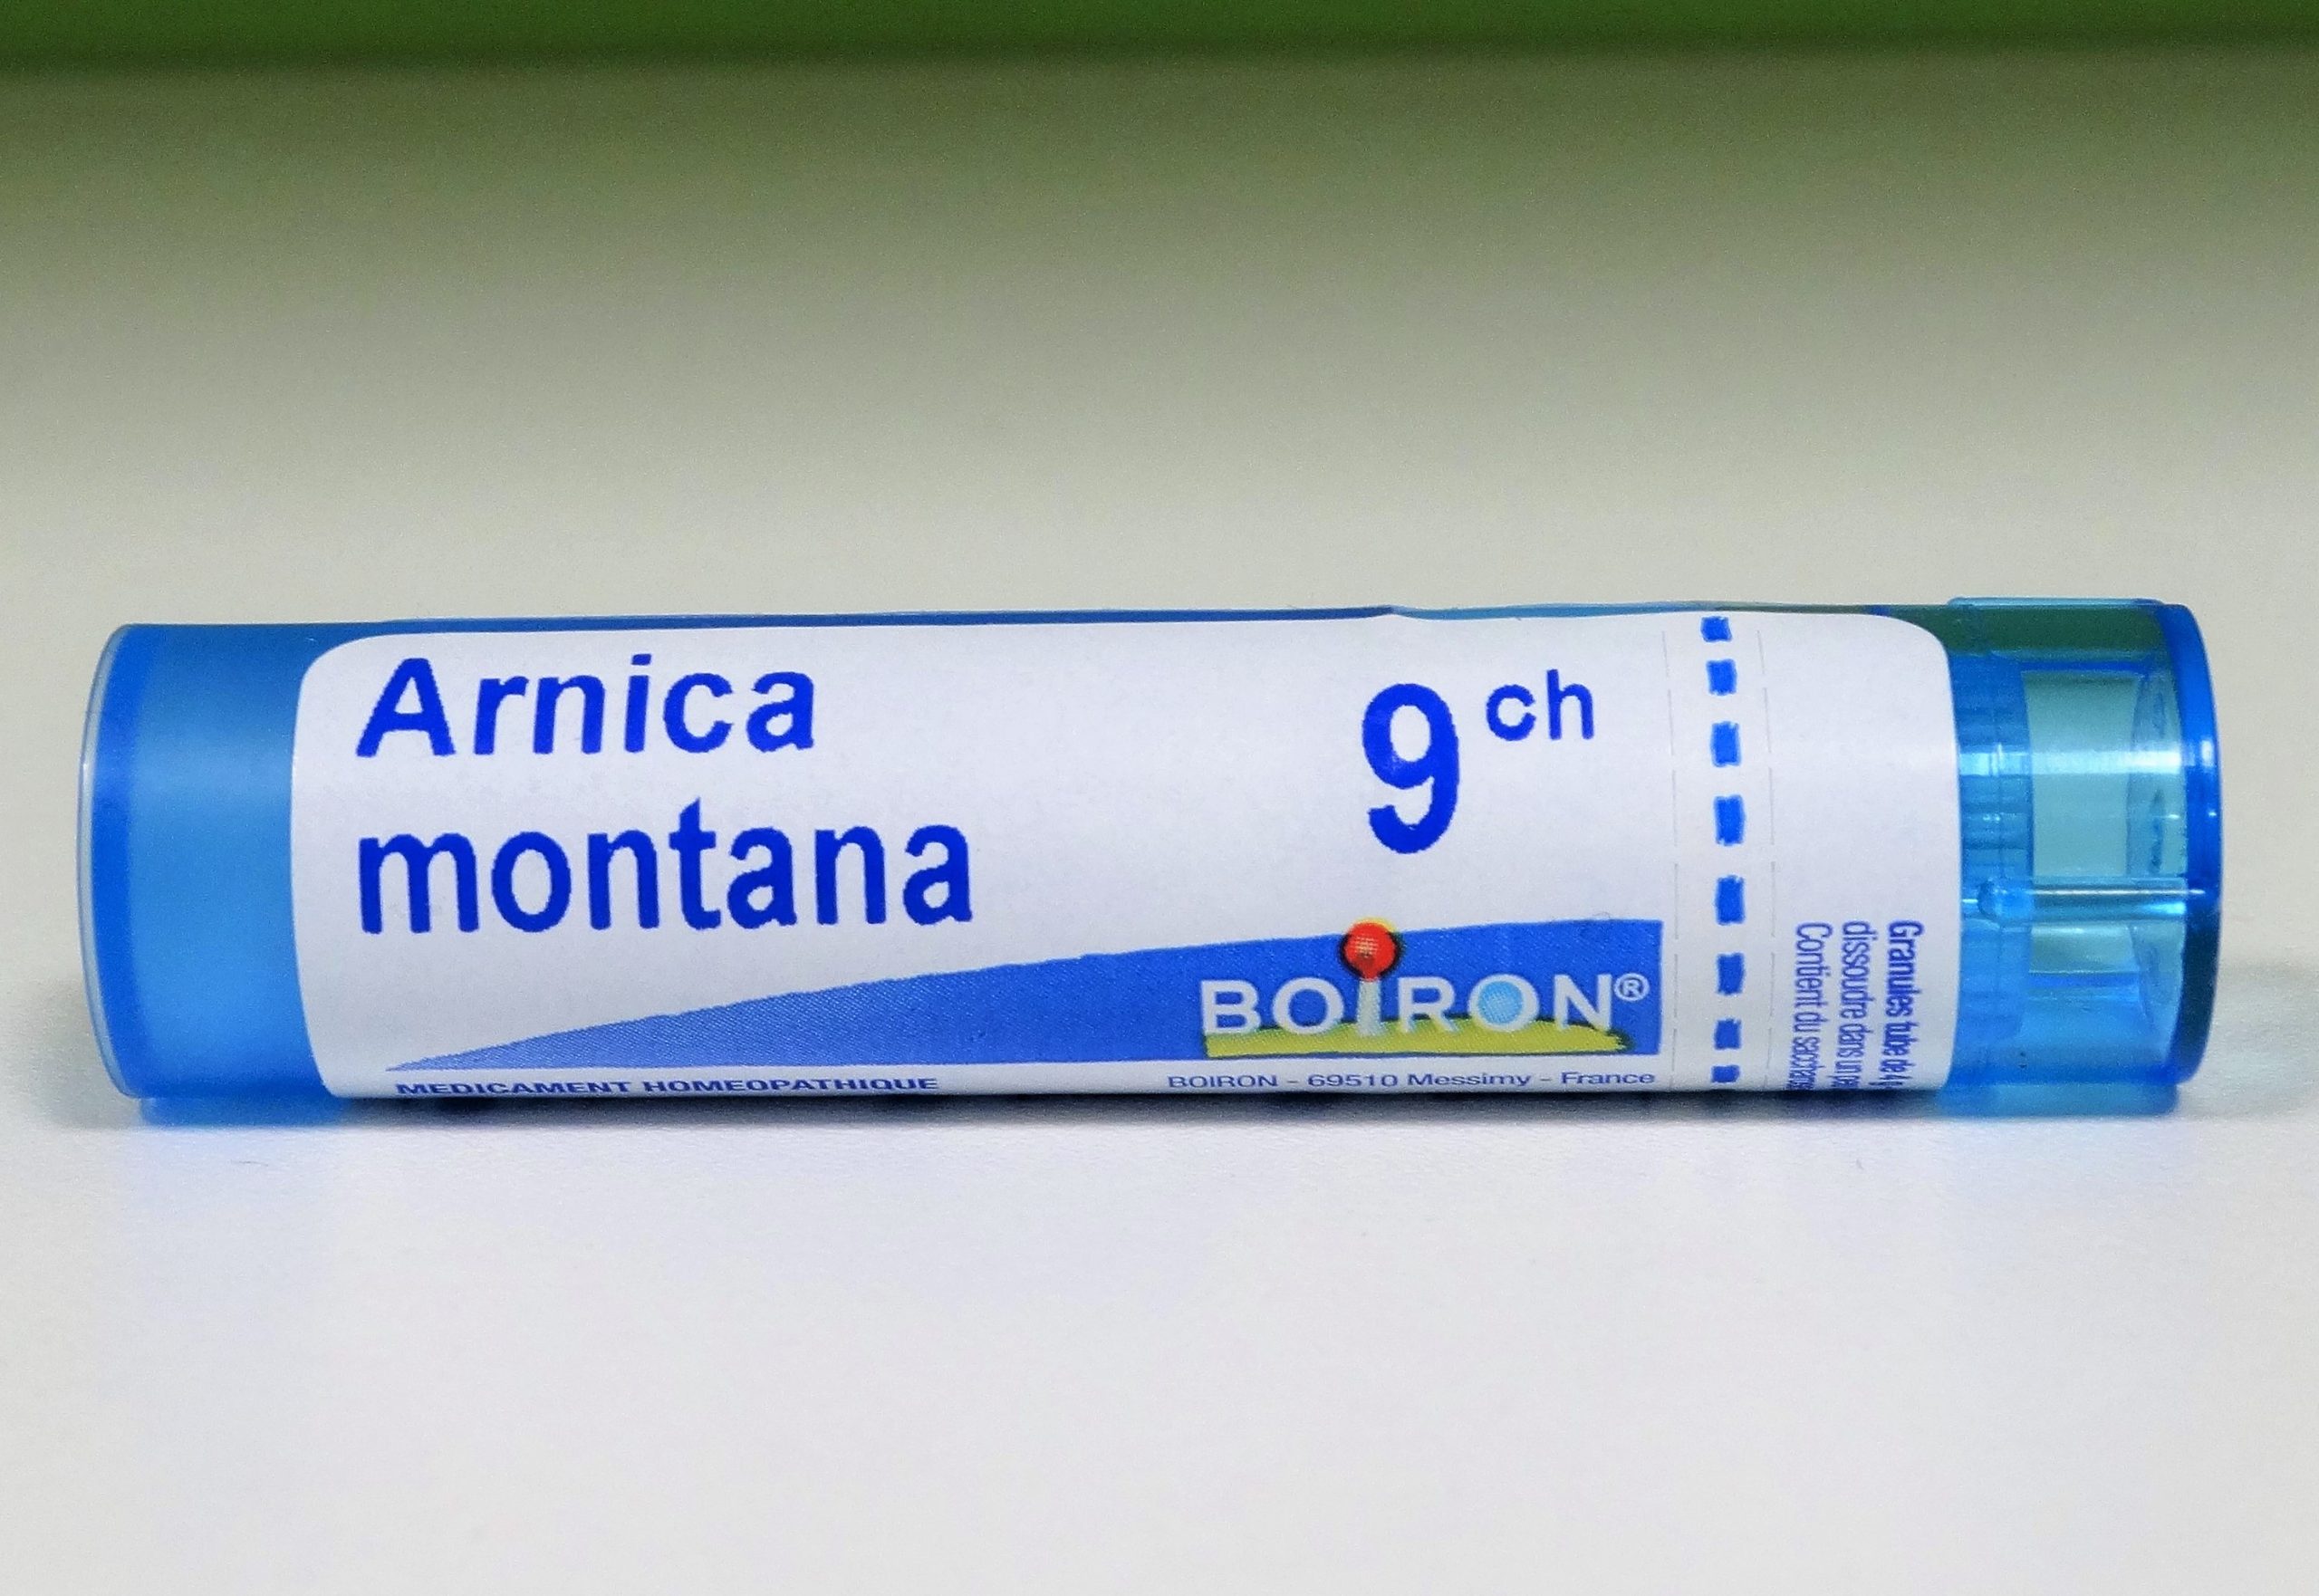 Boiron Arnica Montana 9CH tubo gránulos. Es un medicamento homeopático tradicionalmente utilizado para el tratamiento de los traumatismos musculares